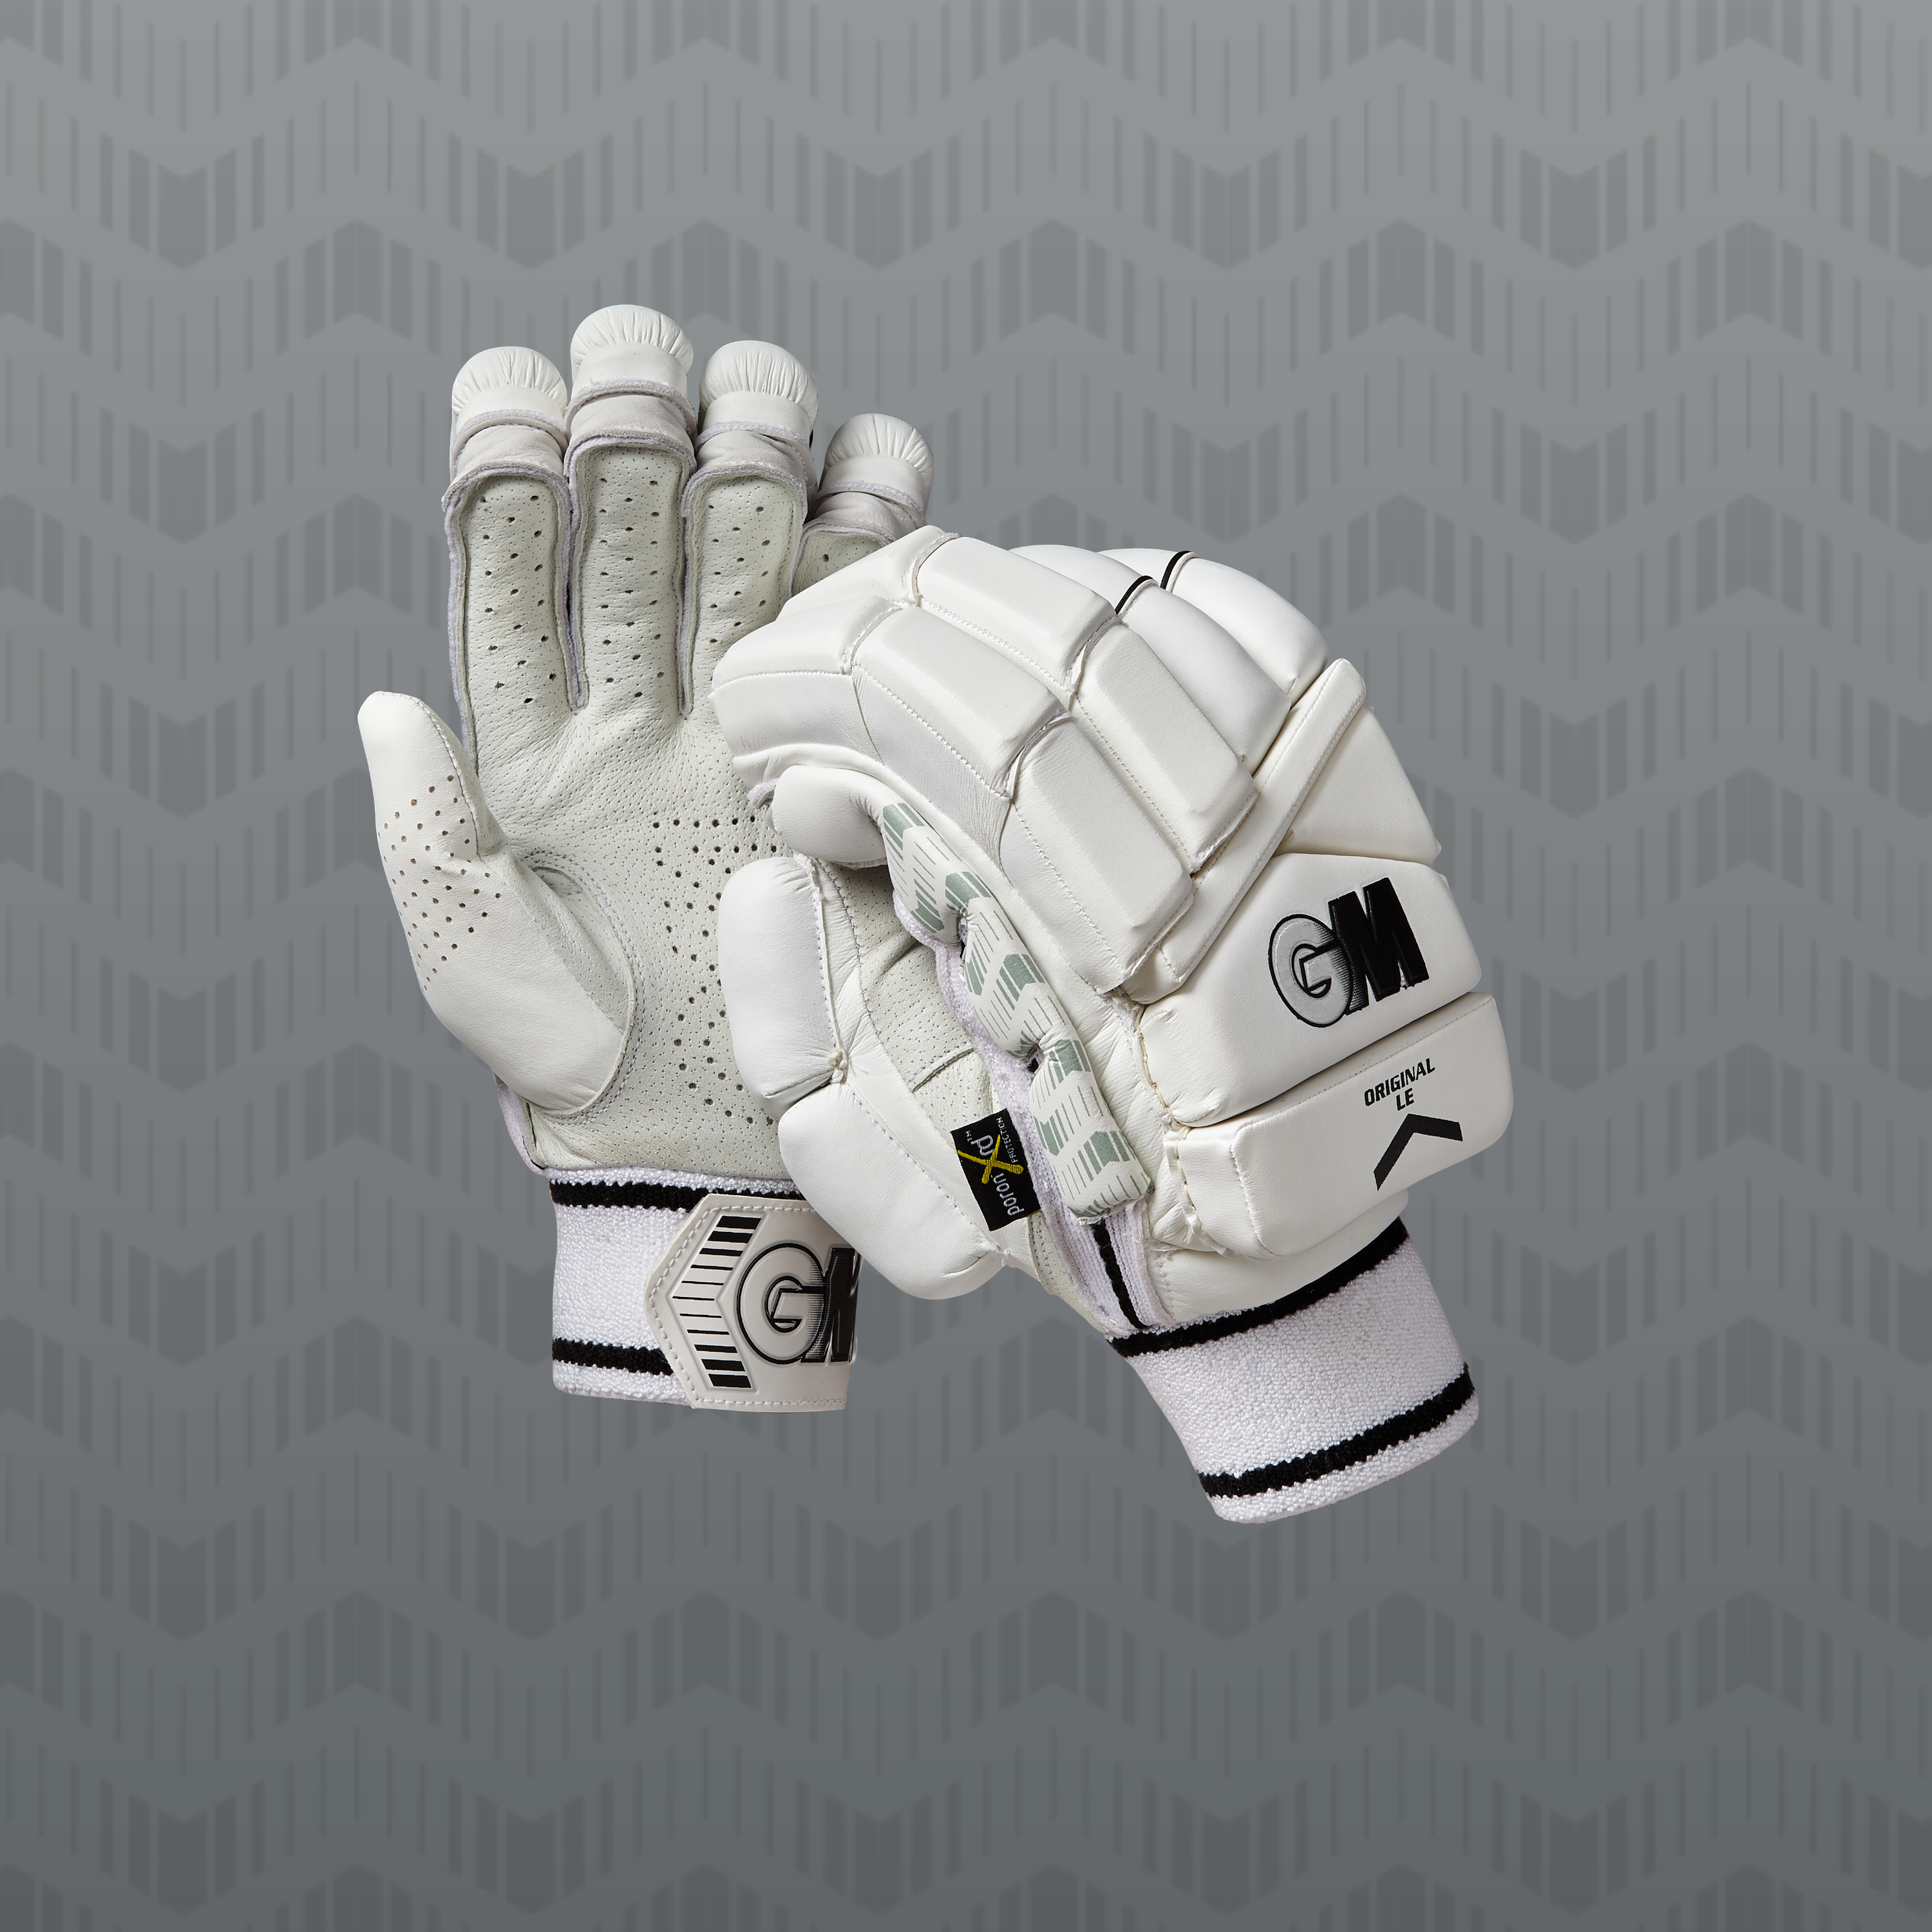 New 2022 Batting Gloves